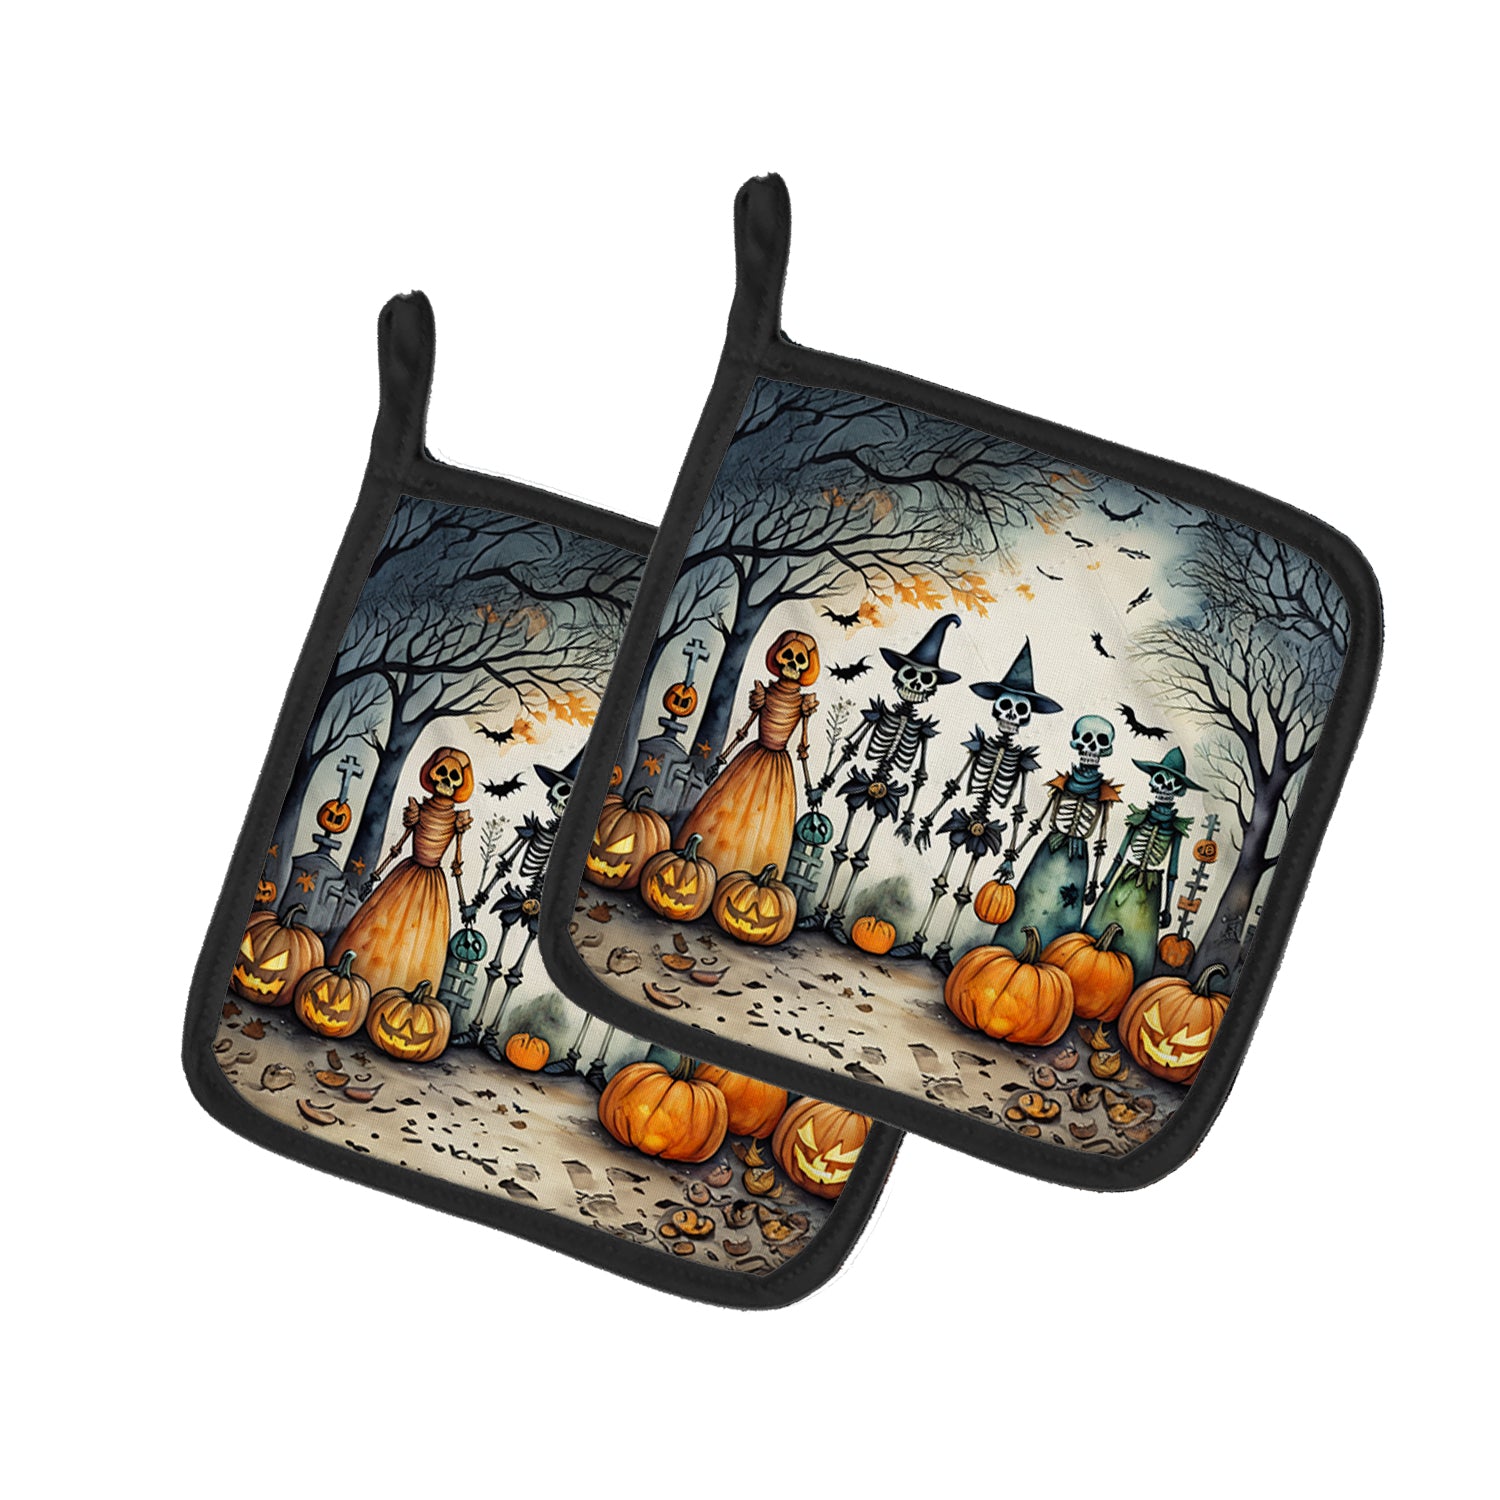 Buy this Calacas Skeletons Spooky Halloween Pair of Pot Holders